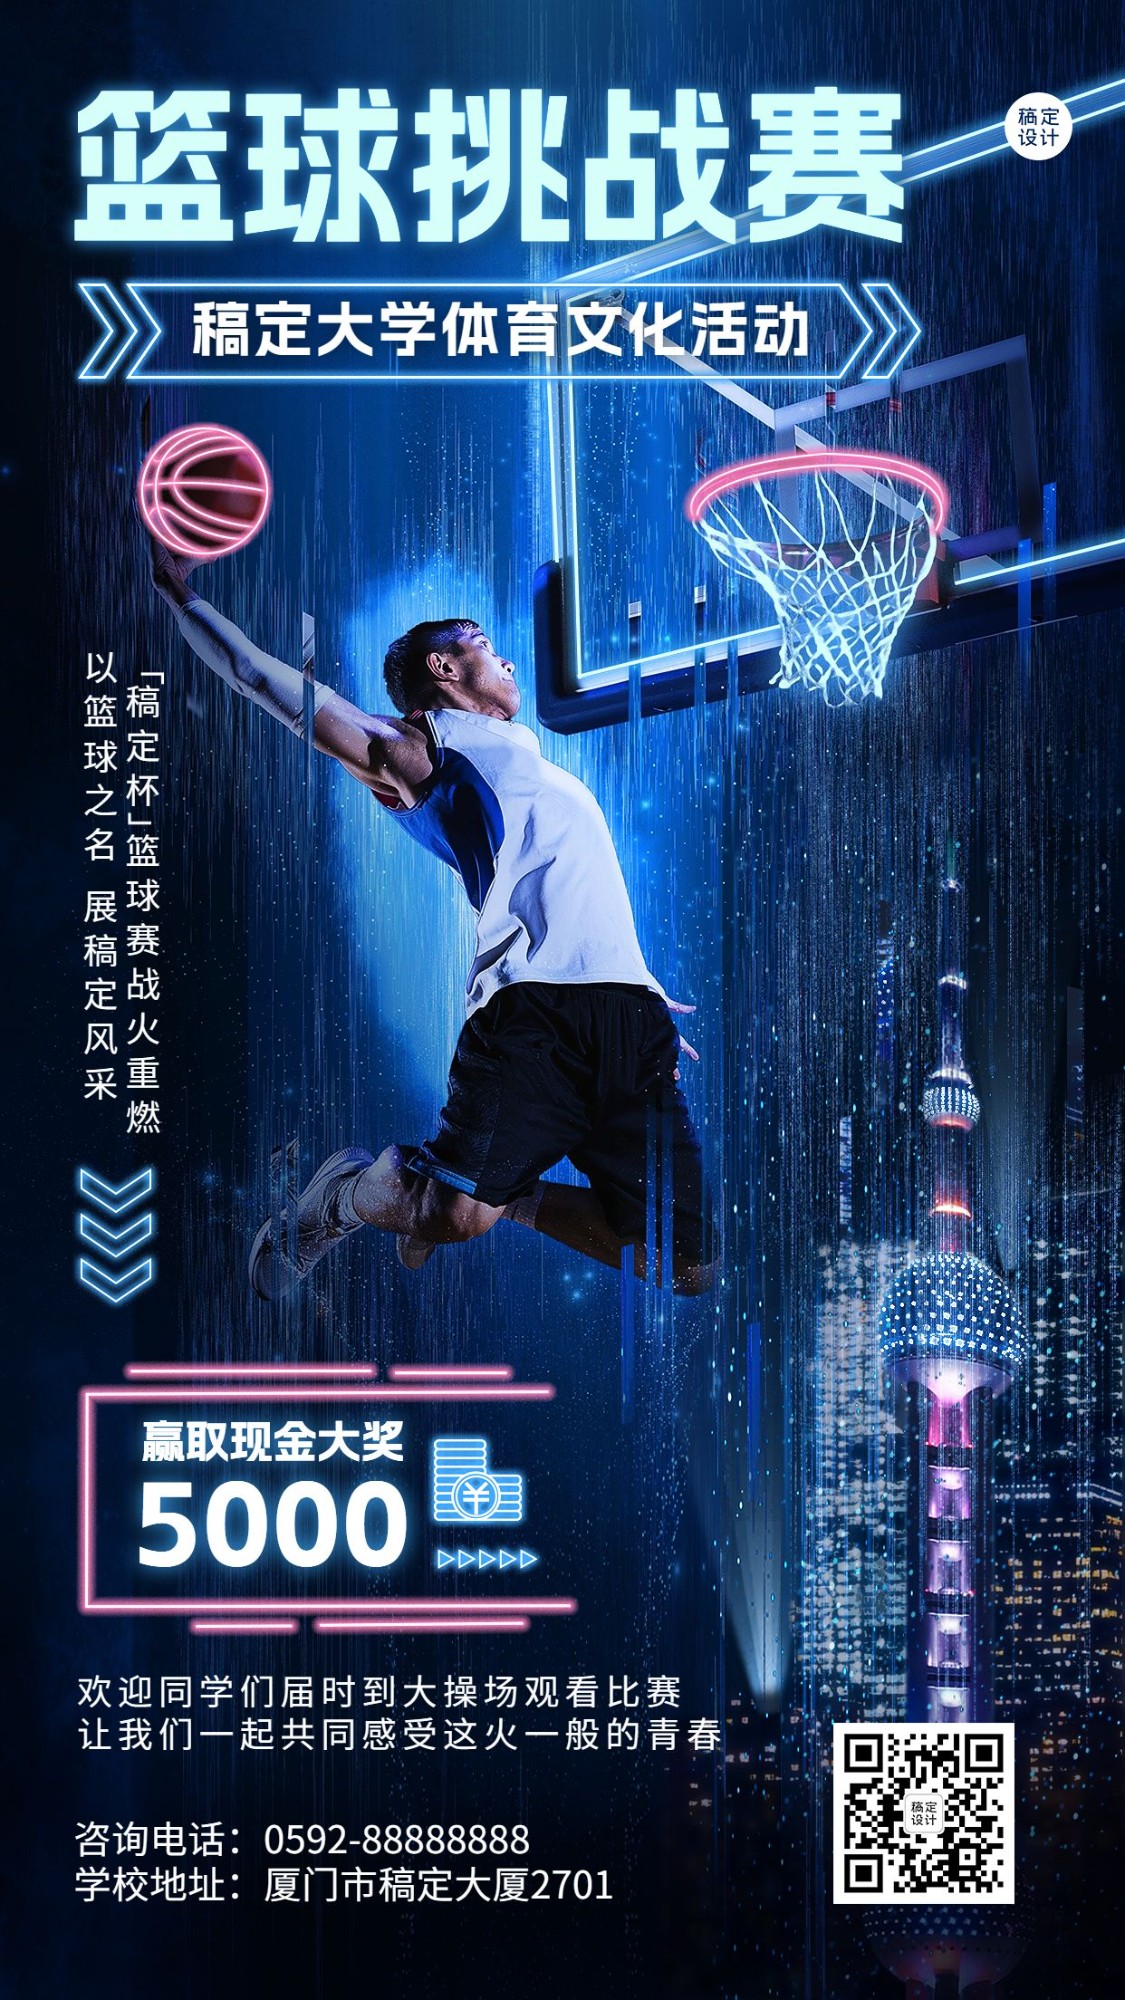 高校篮球比赛活动宣传炫酷风格手机海报预览效果